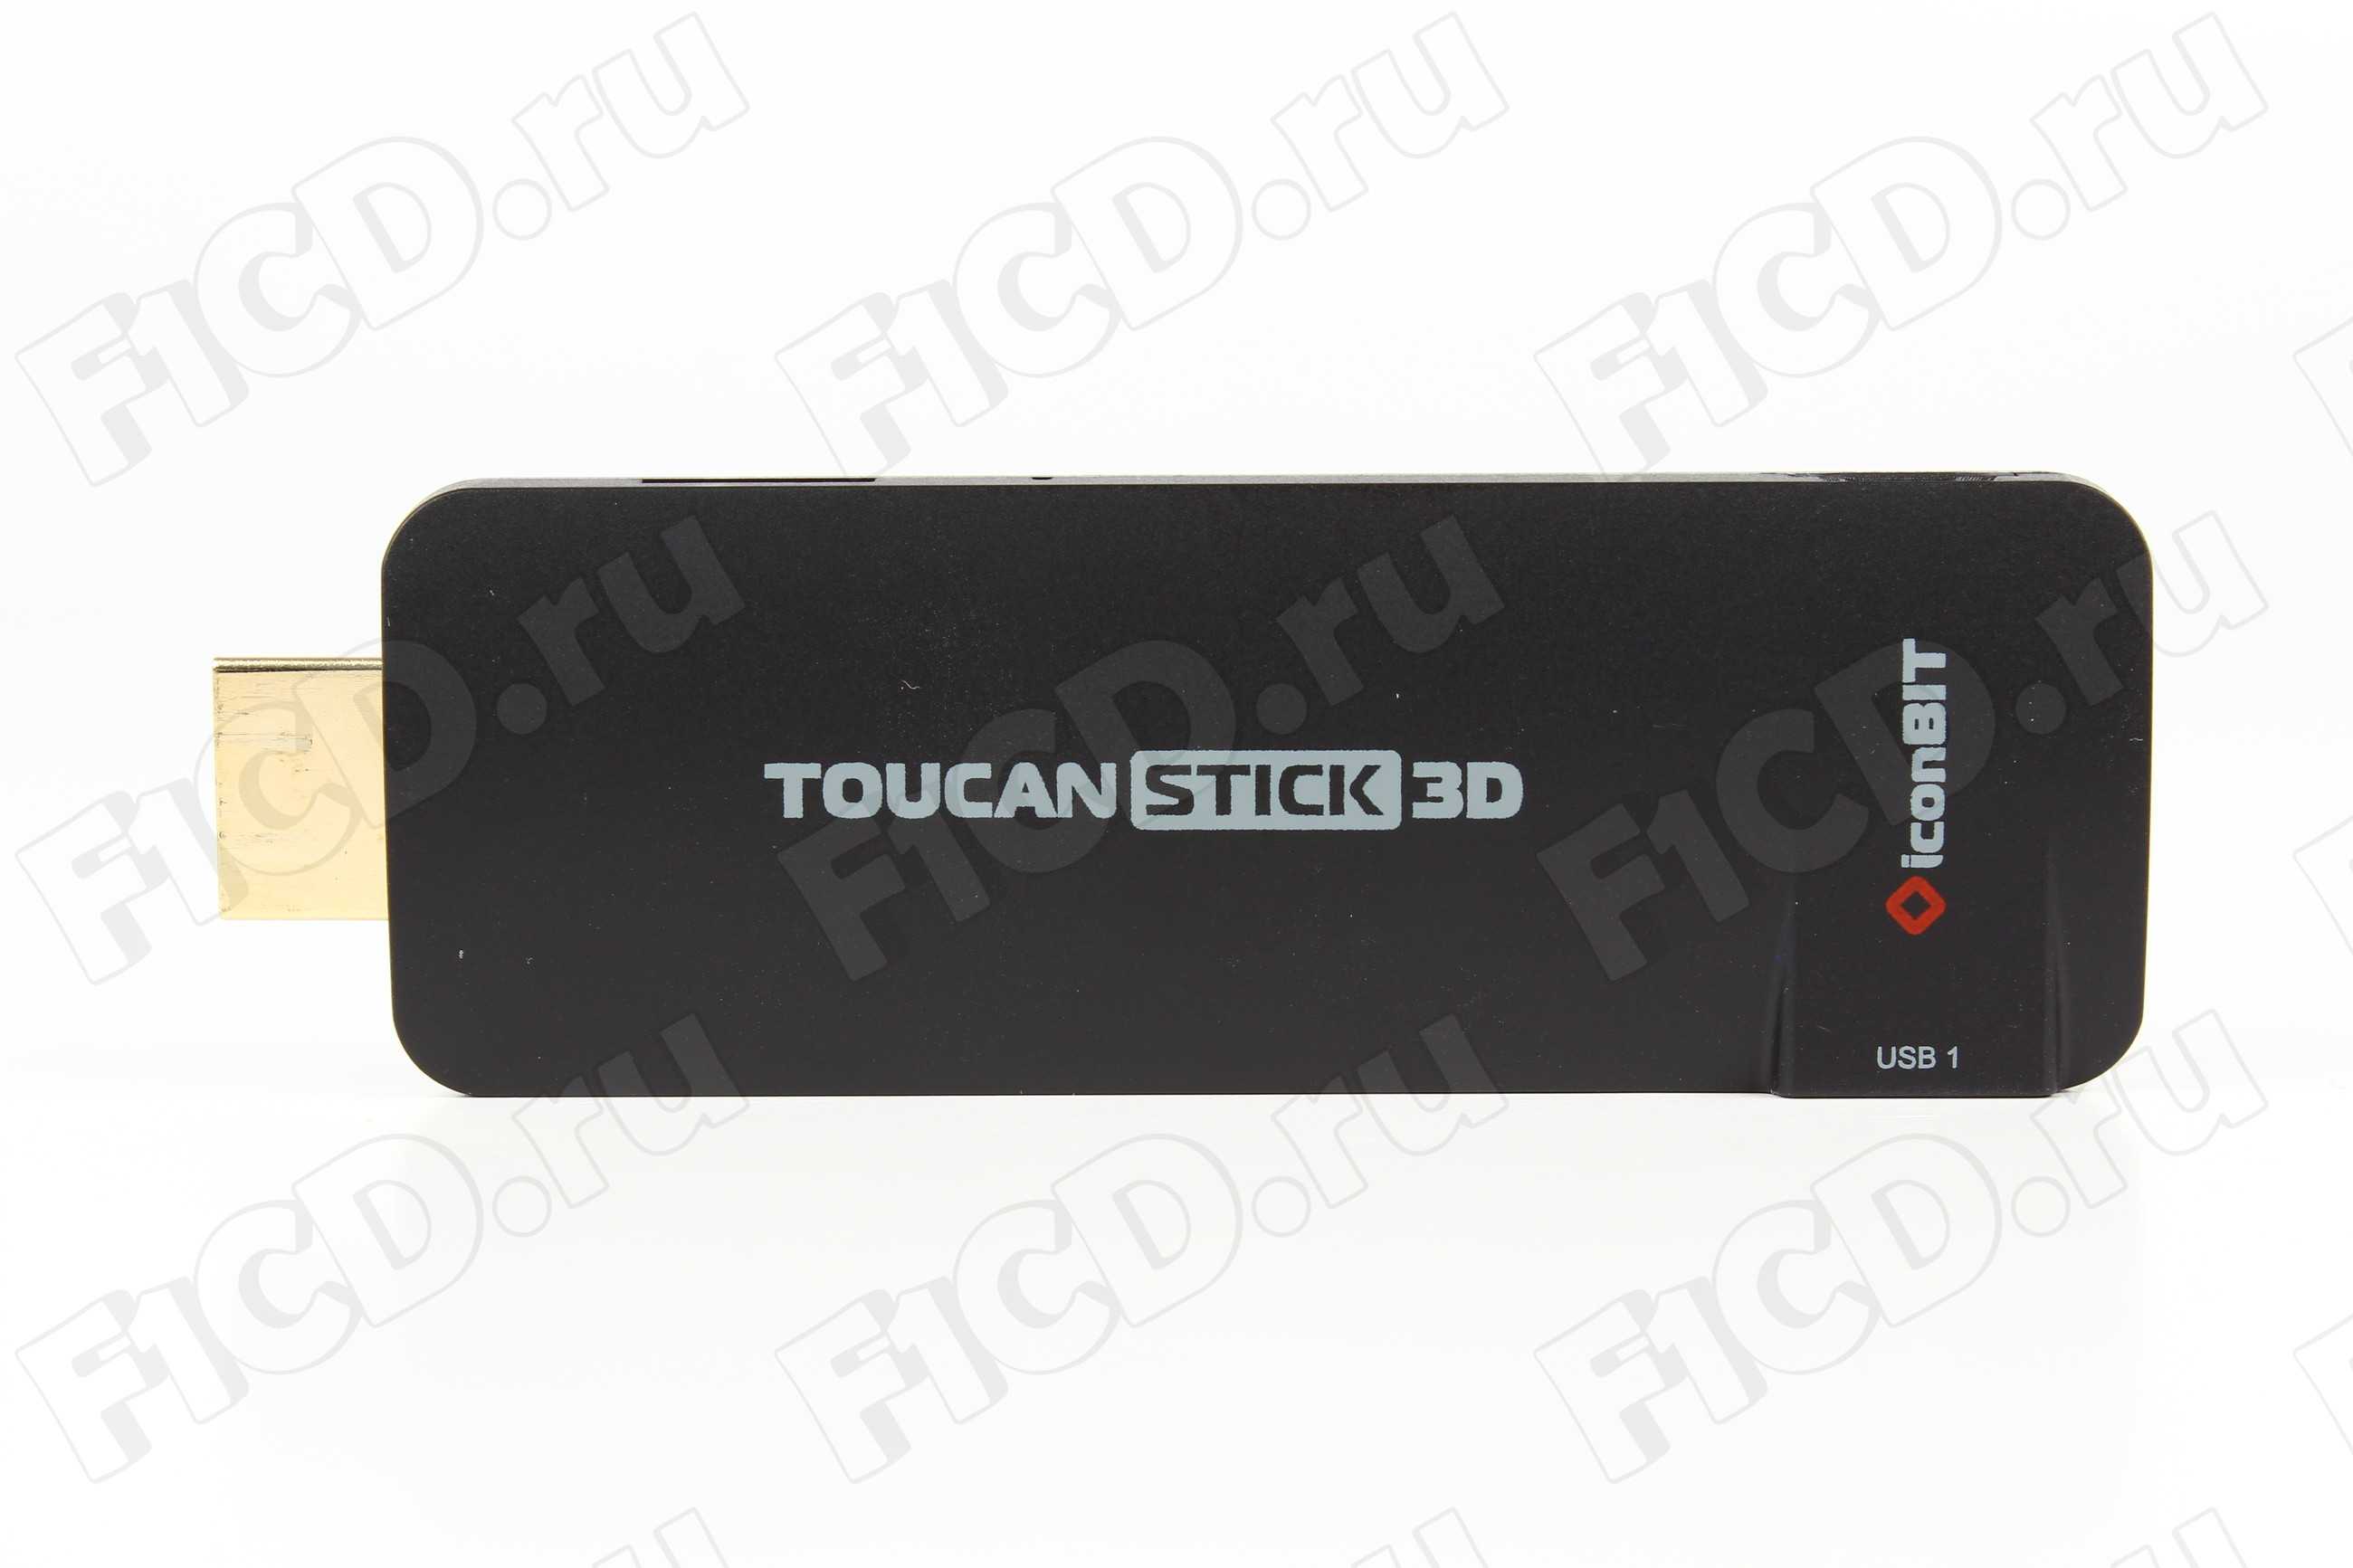 Медиаплеер iconbit toucan stick g2 — купить, цена и характеристики, отзывы